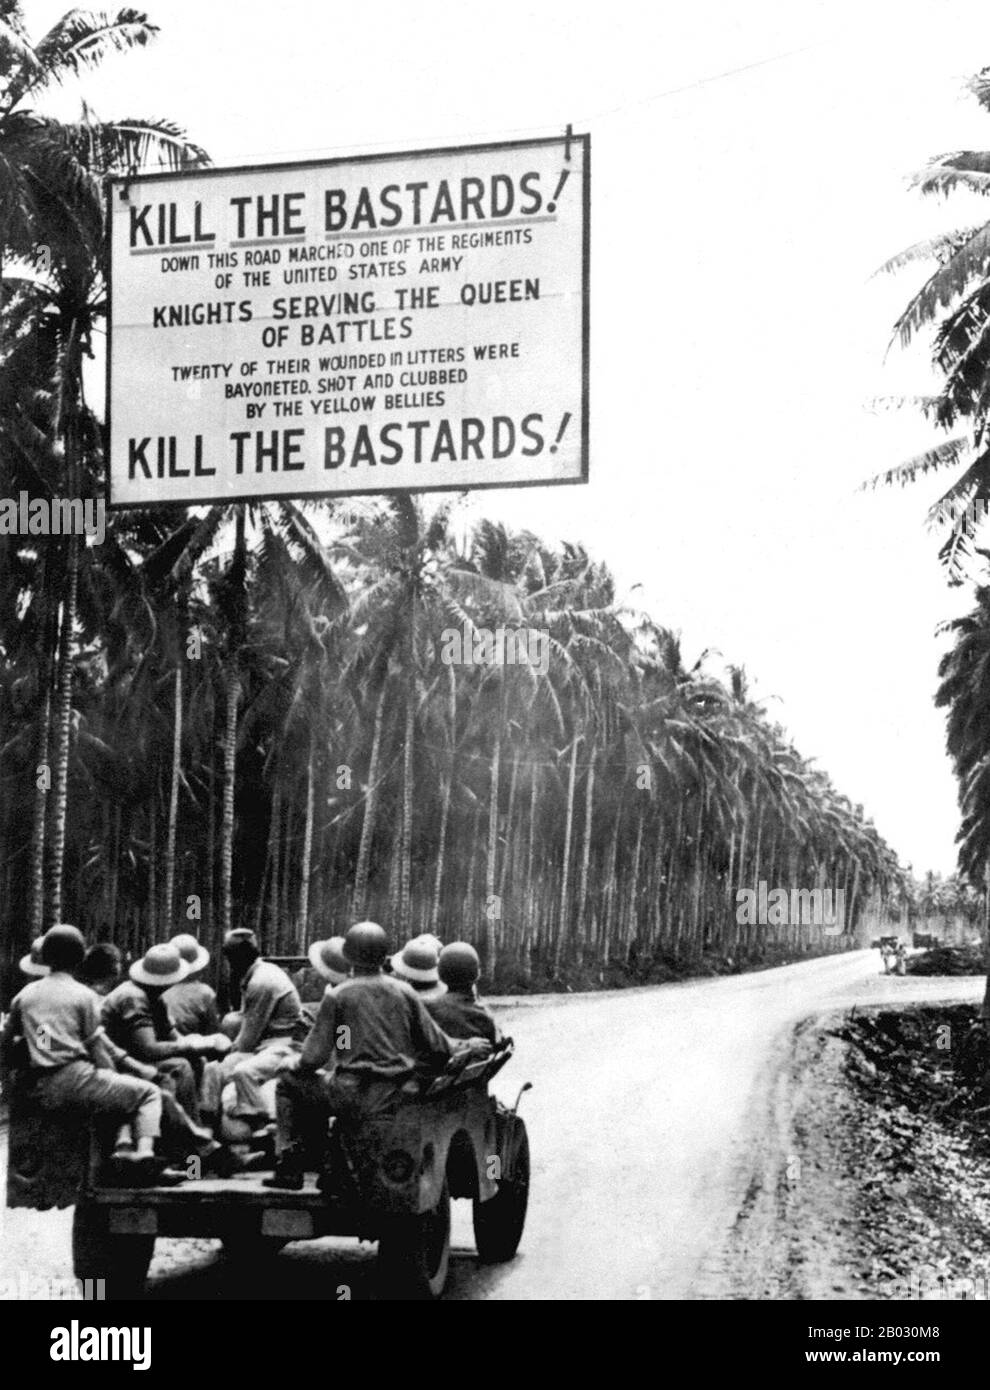 La campagne de Guadalcanal, également connue sous le nom de Bataille de Guadalcanal, a été une campagne militaire menée entre le 7 août 1942 et le 9 février 1943 sur et autour de l'île de Guadalcanal dans le théâtre Pacifique de la seconde Guerre mondiale C'était la première offensive majeure des forces alliées contre l'Empire du Japon. Après six mois de combat acharné, les forces alliées ont réussi à mettre fin à l'avance japonaise, conduisant les dernières troupes japonaises dans la mer le 15 janvier 1943. Les autorités américaines ont déclaré Guadalcanal Secure le 9 février 1943. Banque D'Images